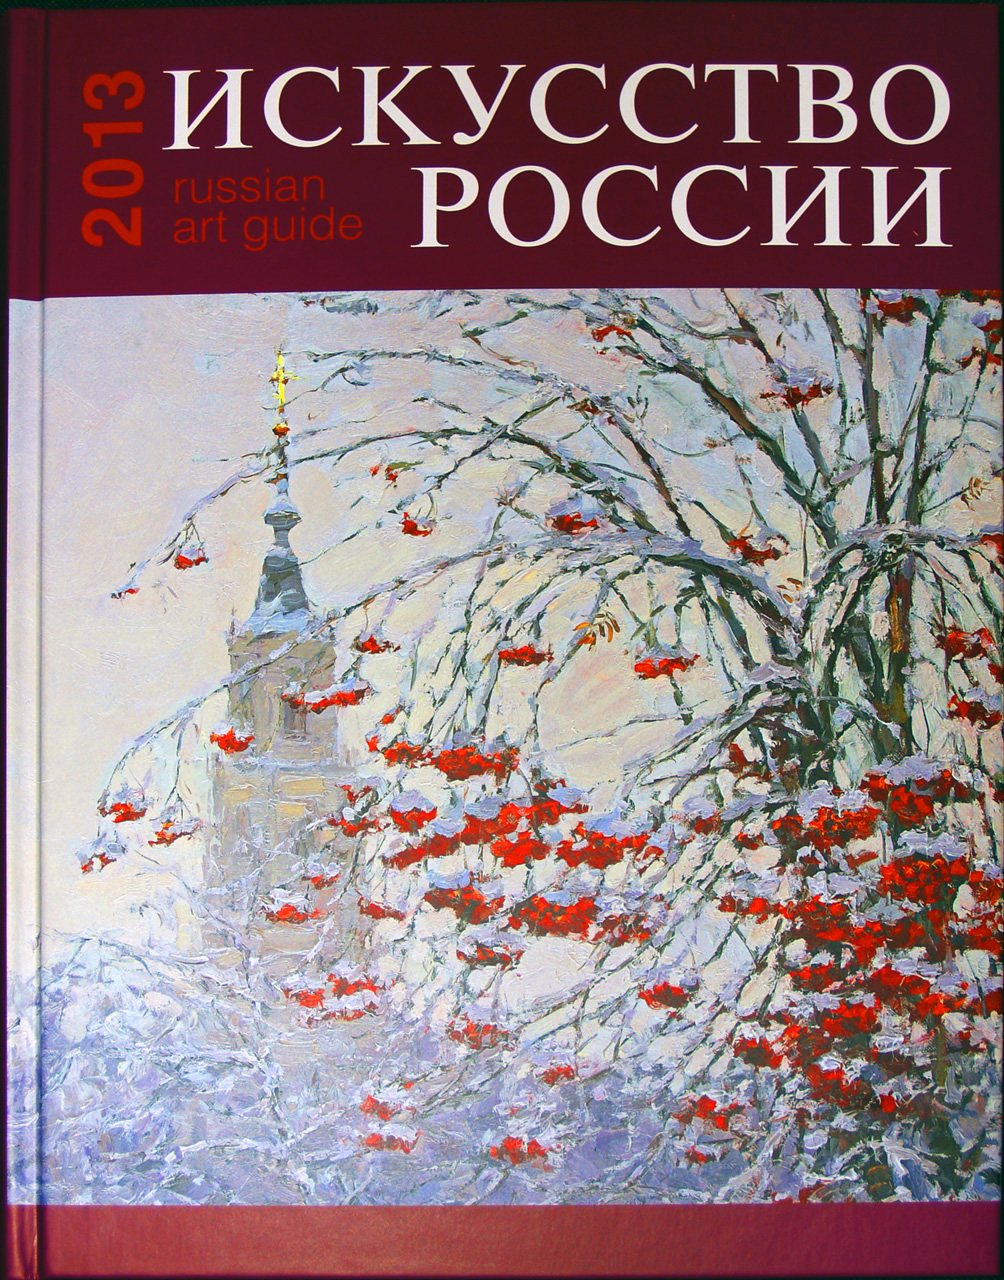 Russian-art-book-2013